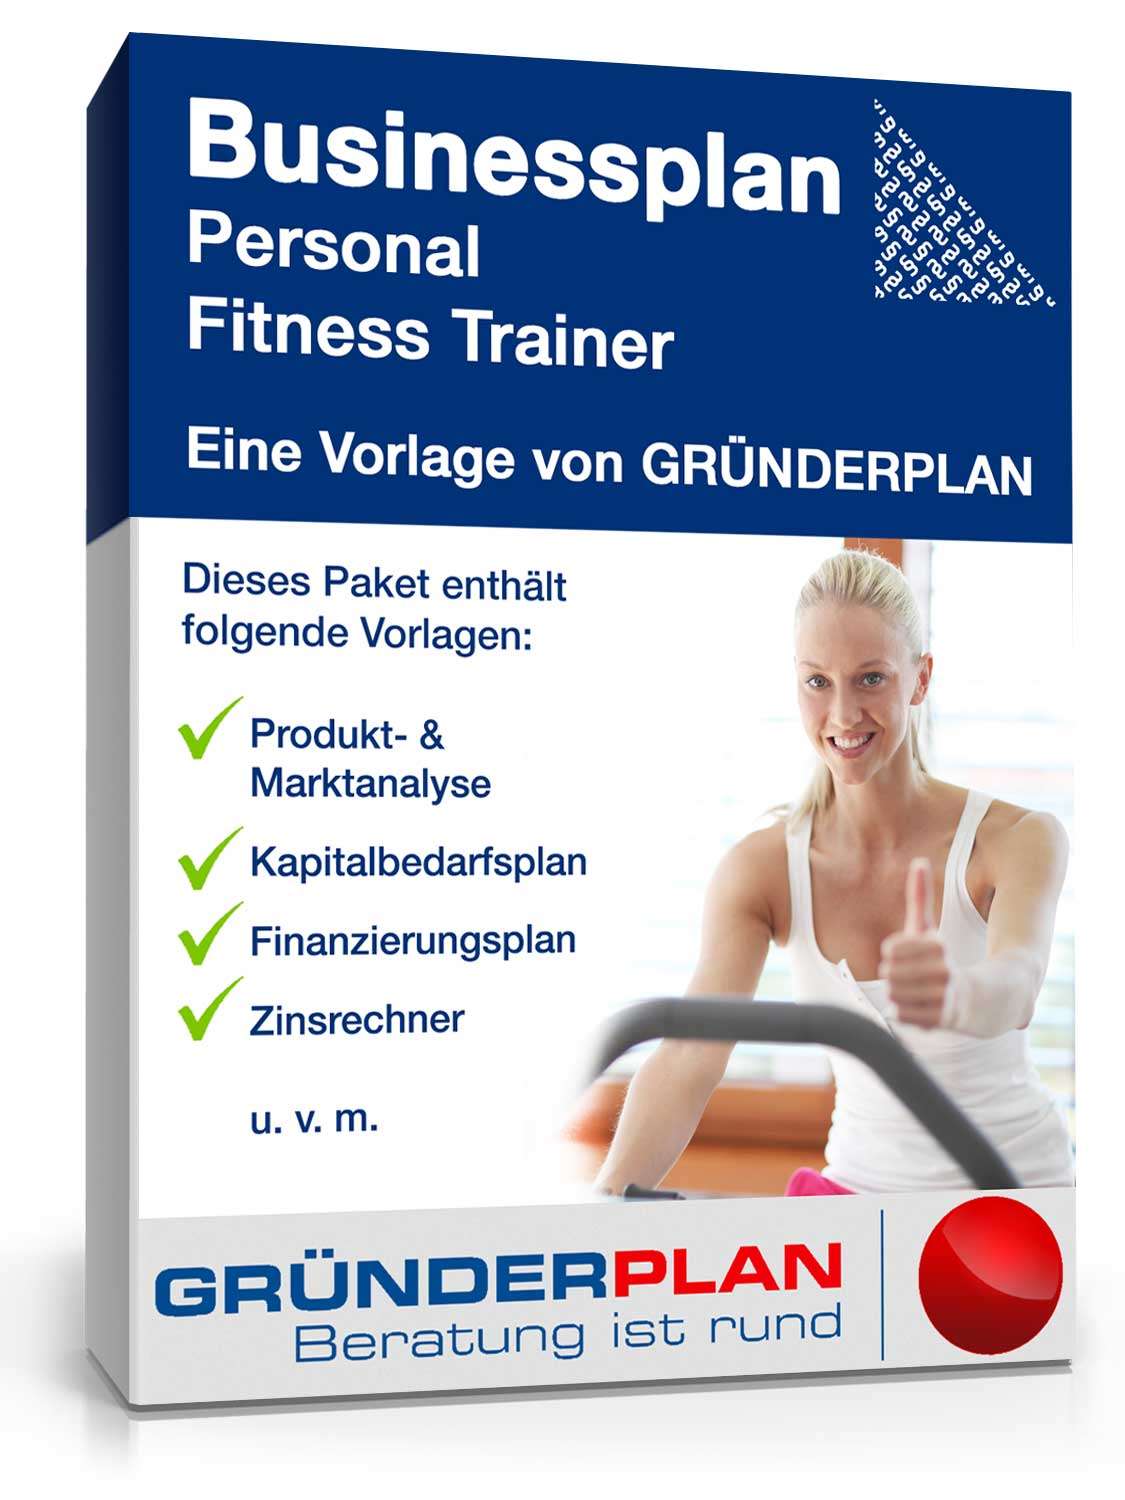 Hauptbild des Produkts: Businessplan Personal Fitness Trainer von Gründerplan